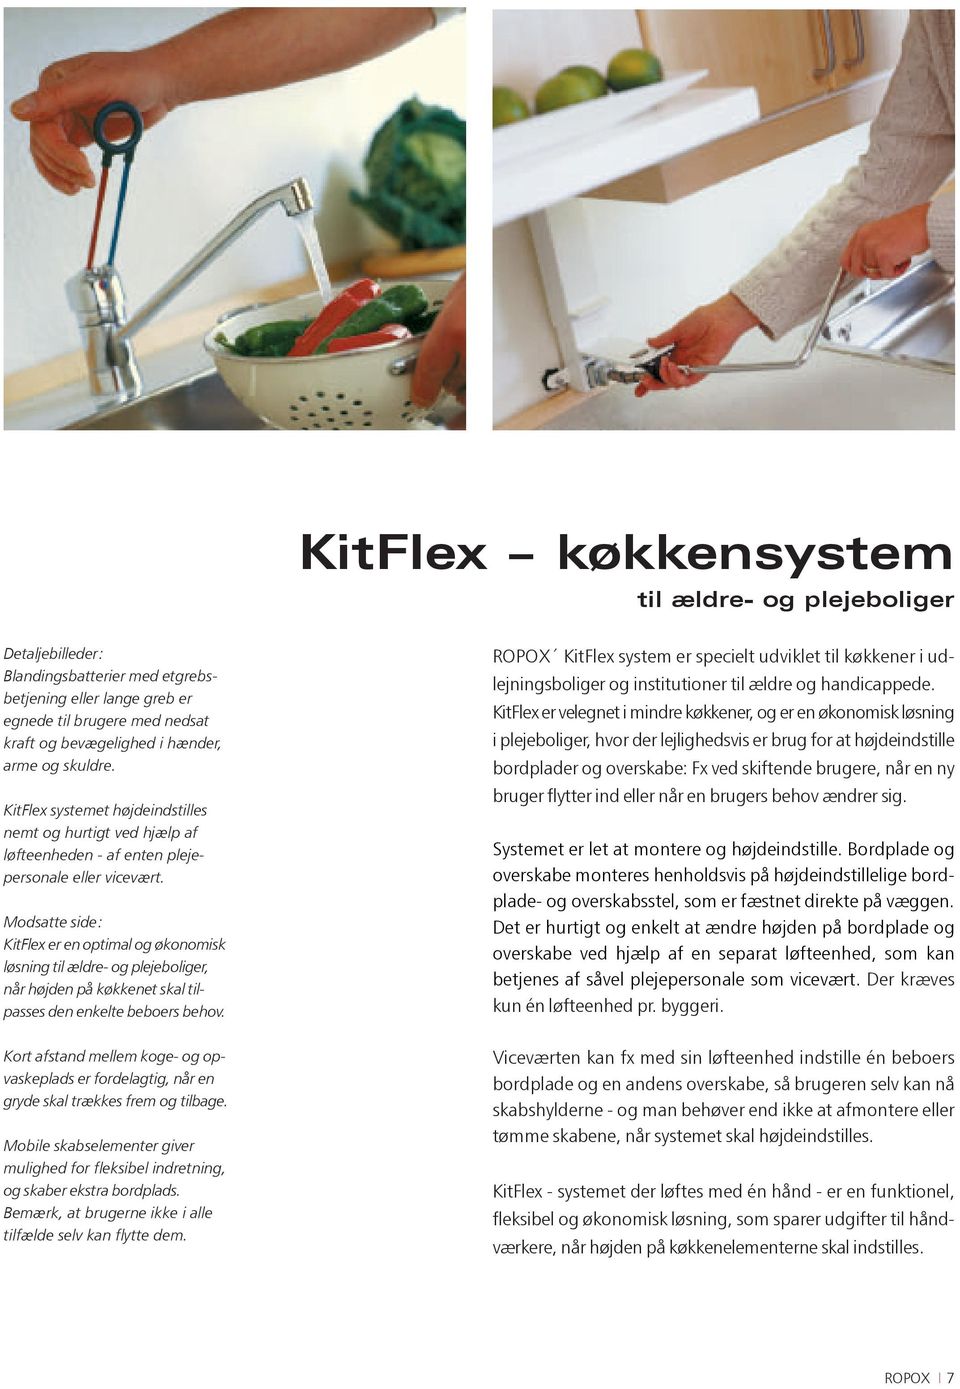 Modsatte side: KitFlex er en optimal og økonomisk løsning til ældre- og plejeboliger, når højden på køkkenet skal tilpasses den enkelte beboers behov.